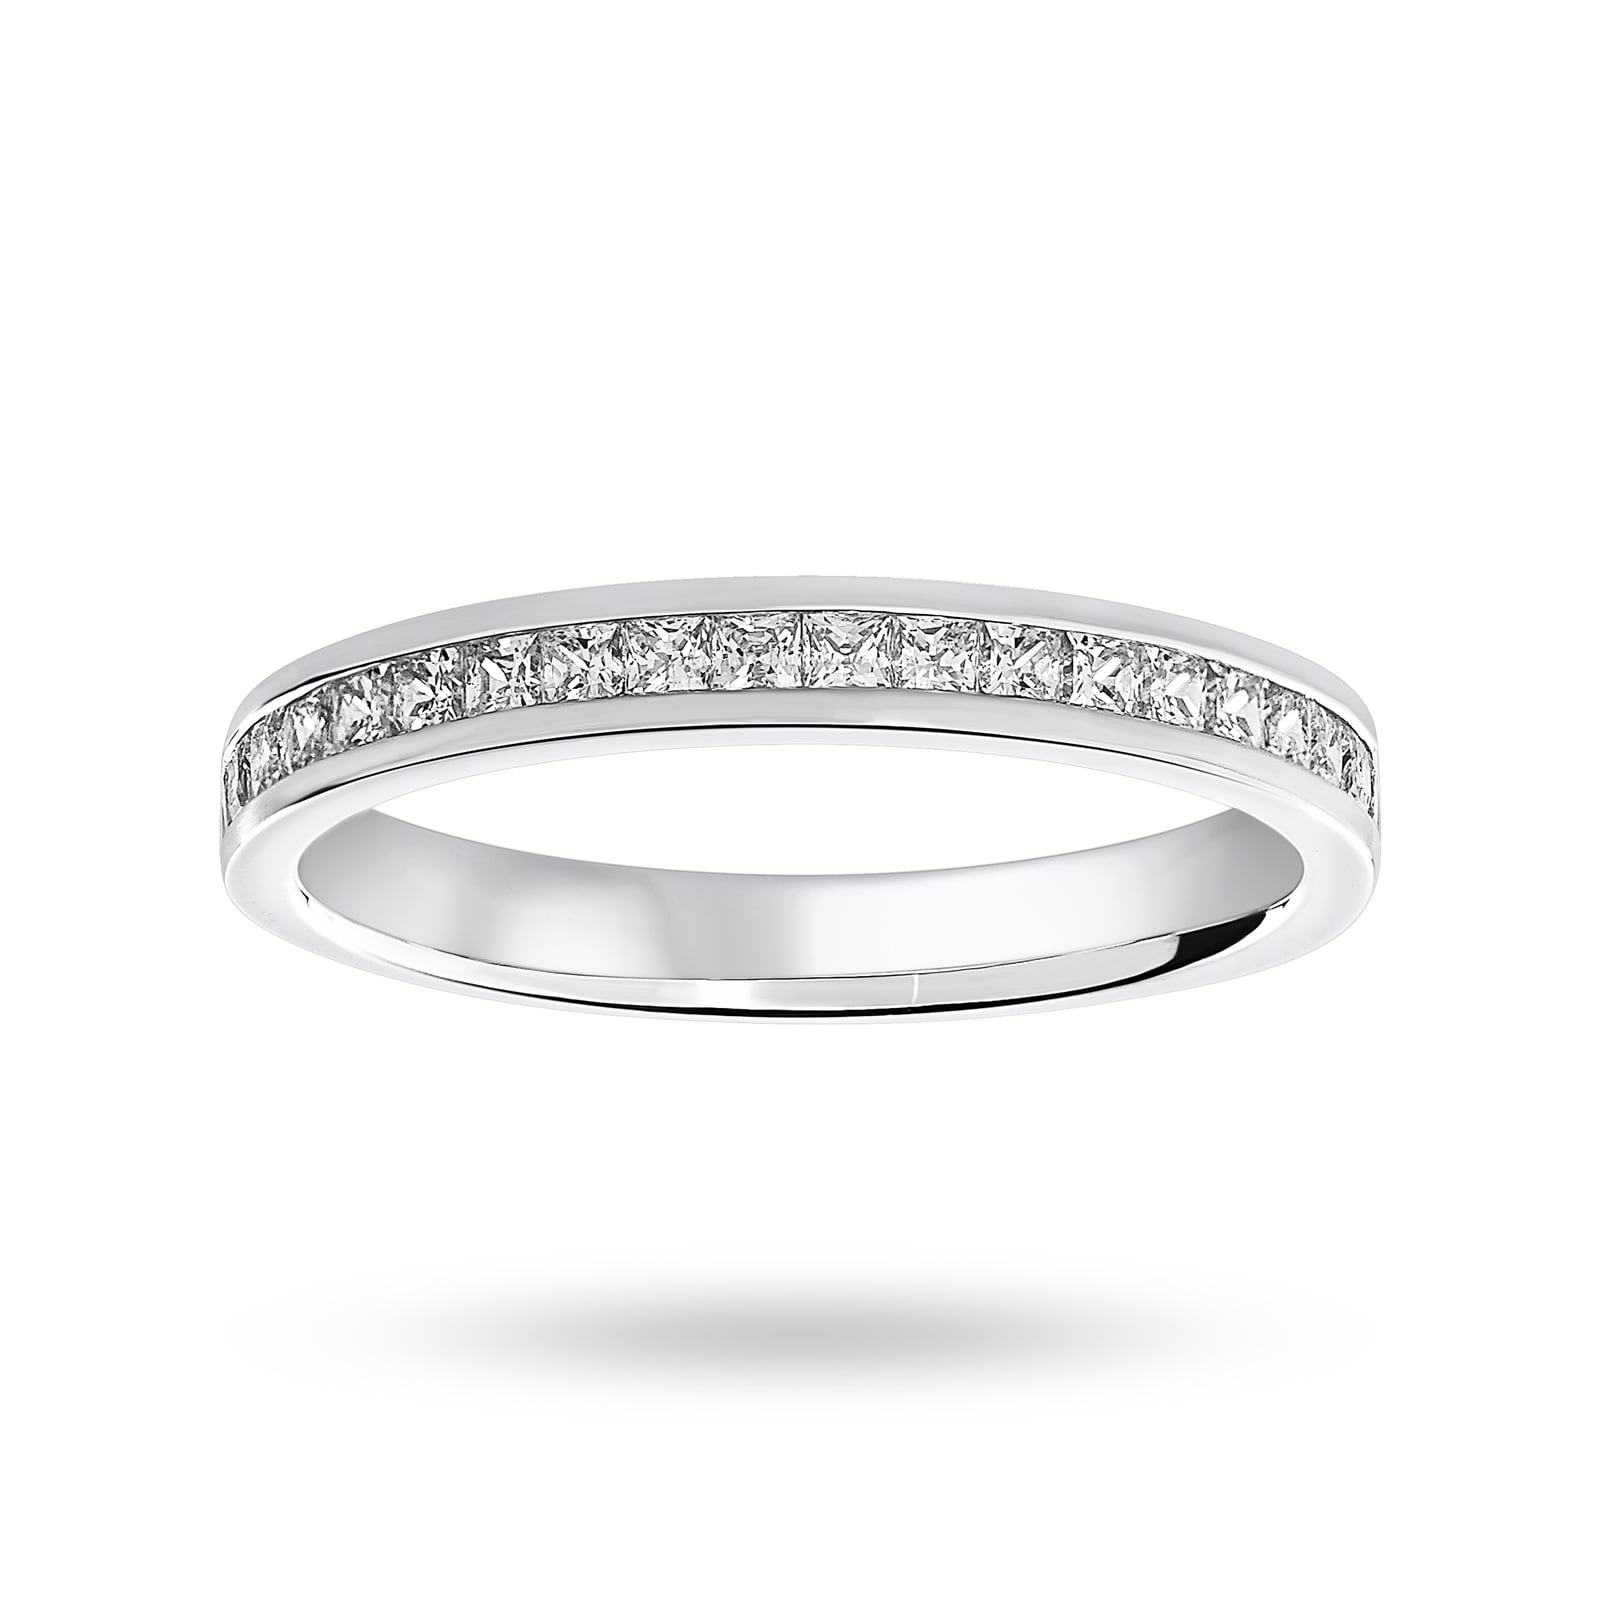 9 Carat White Gold 0.50 Carat Princess Cut Half Eternity Ring - Ring Size O